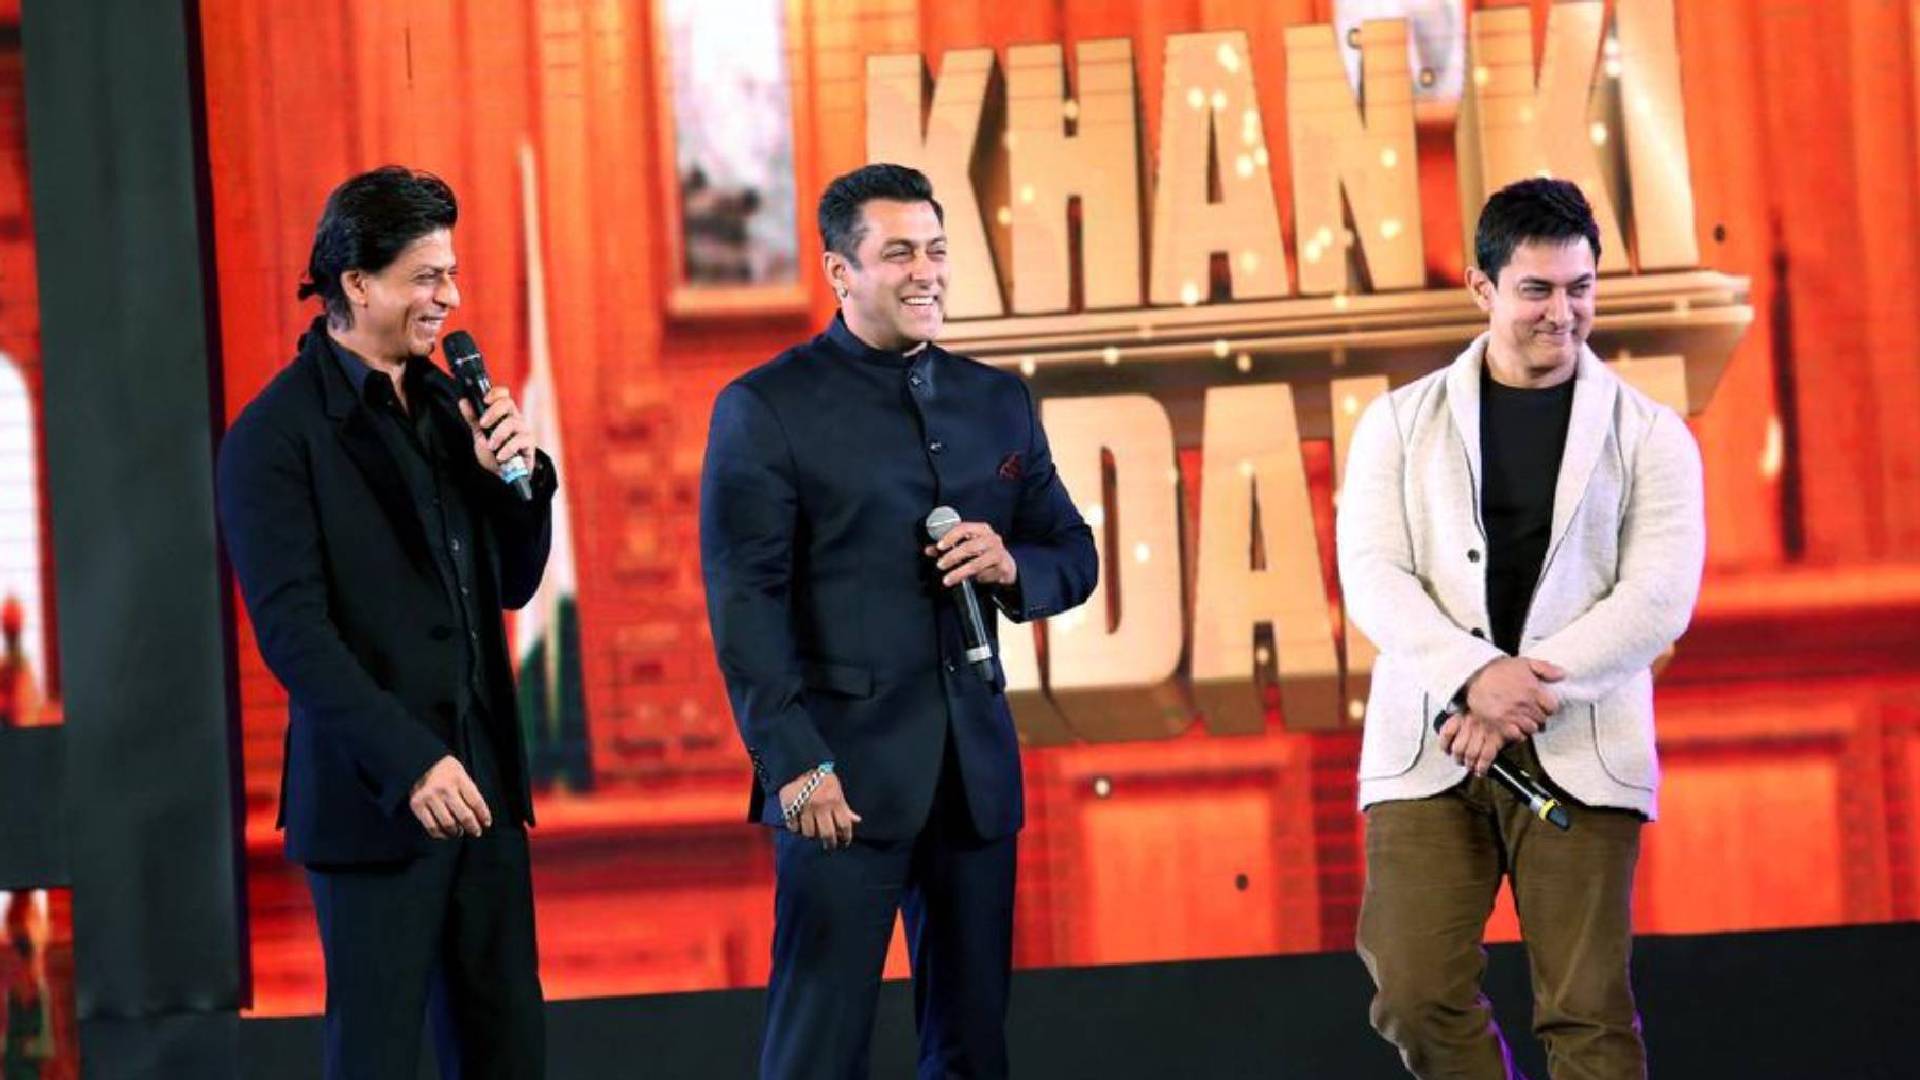 सलमान, शाहरुख और आमिर खान पहली बार करेंगे साथ काम, जल्द होगा इसका आधिकारिक ऐलान